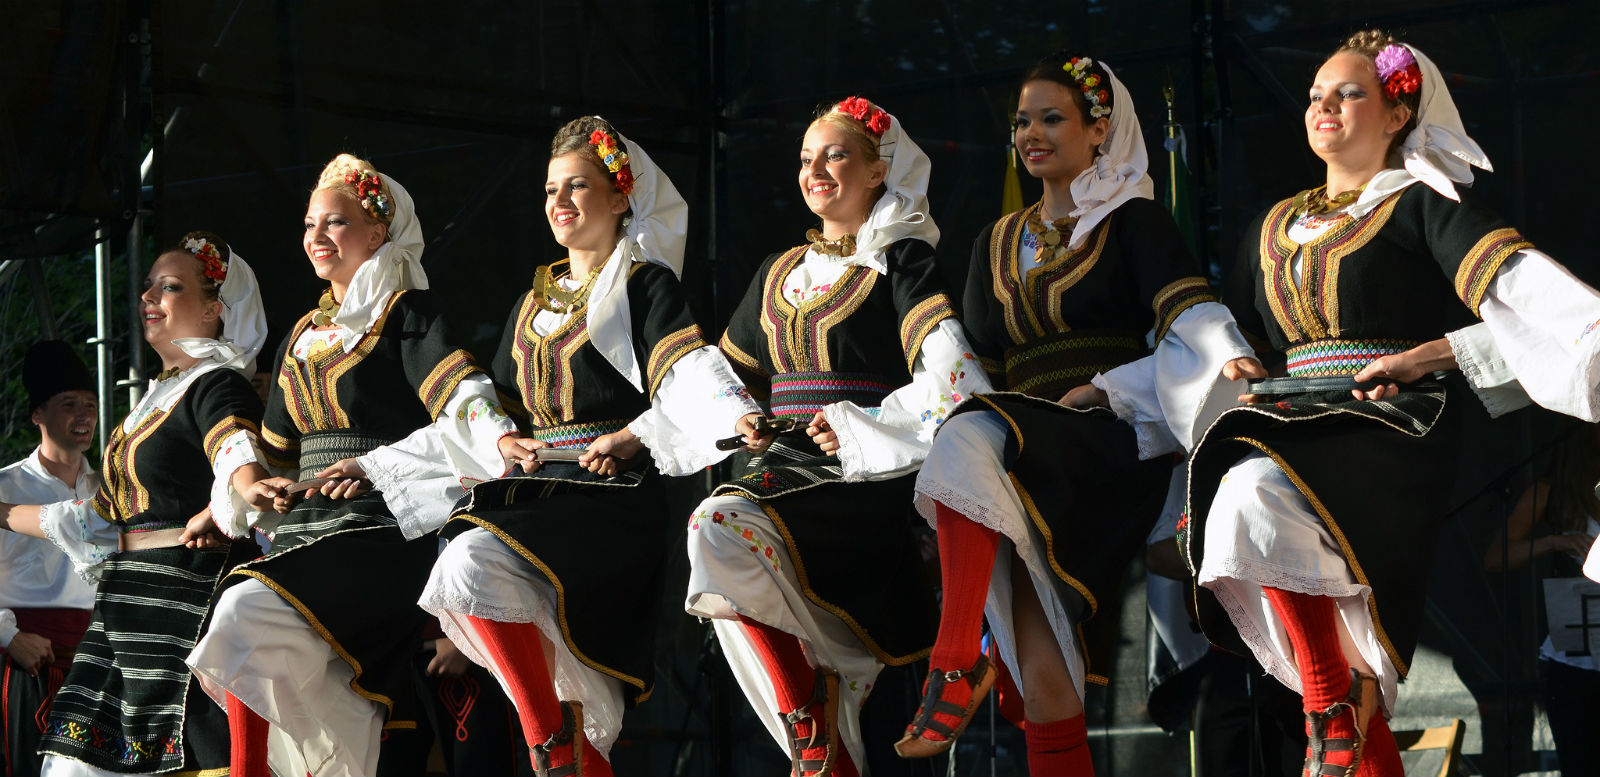 National dance - Serbia.com